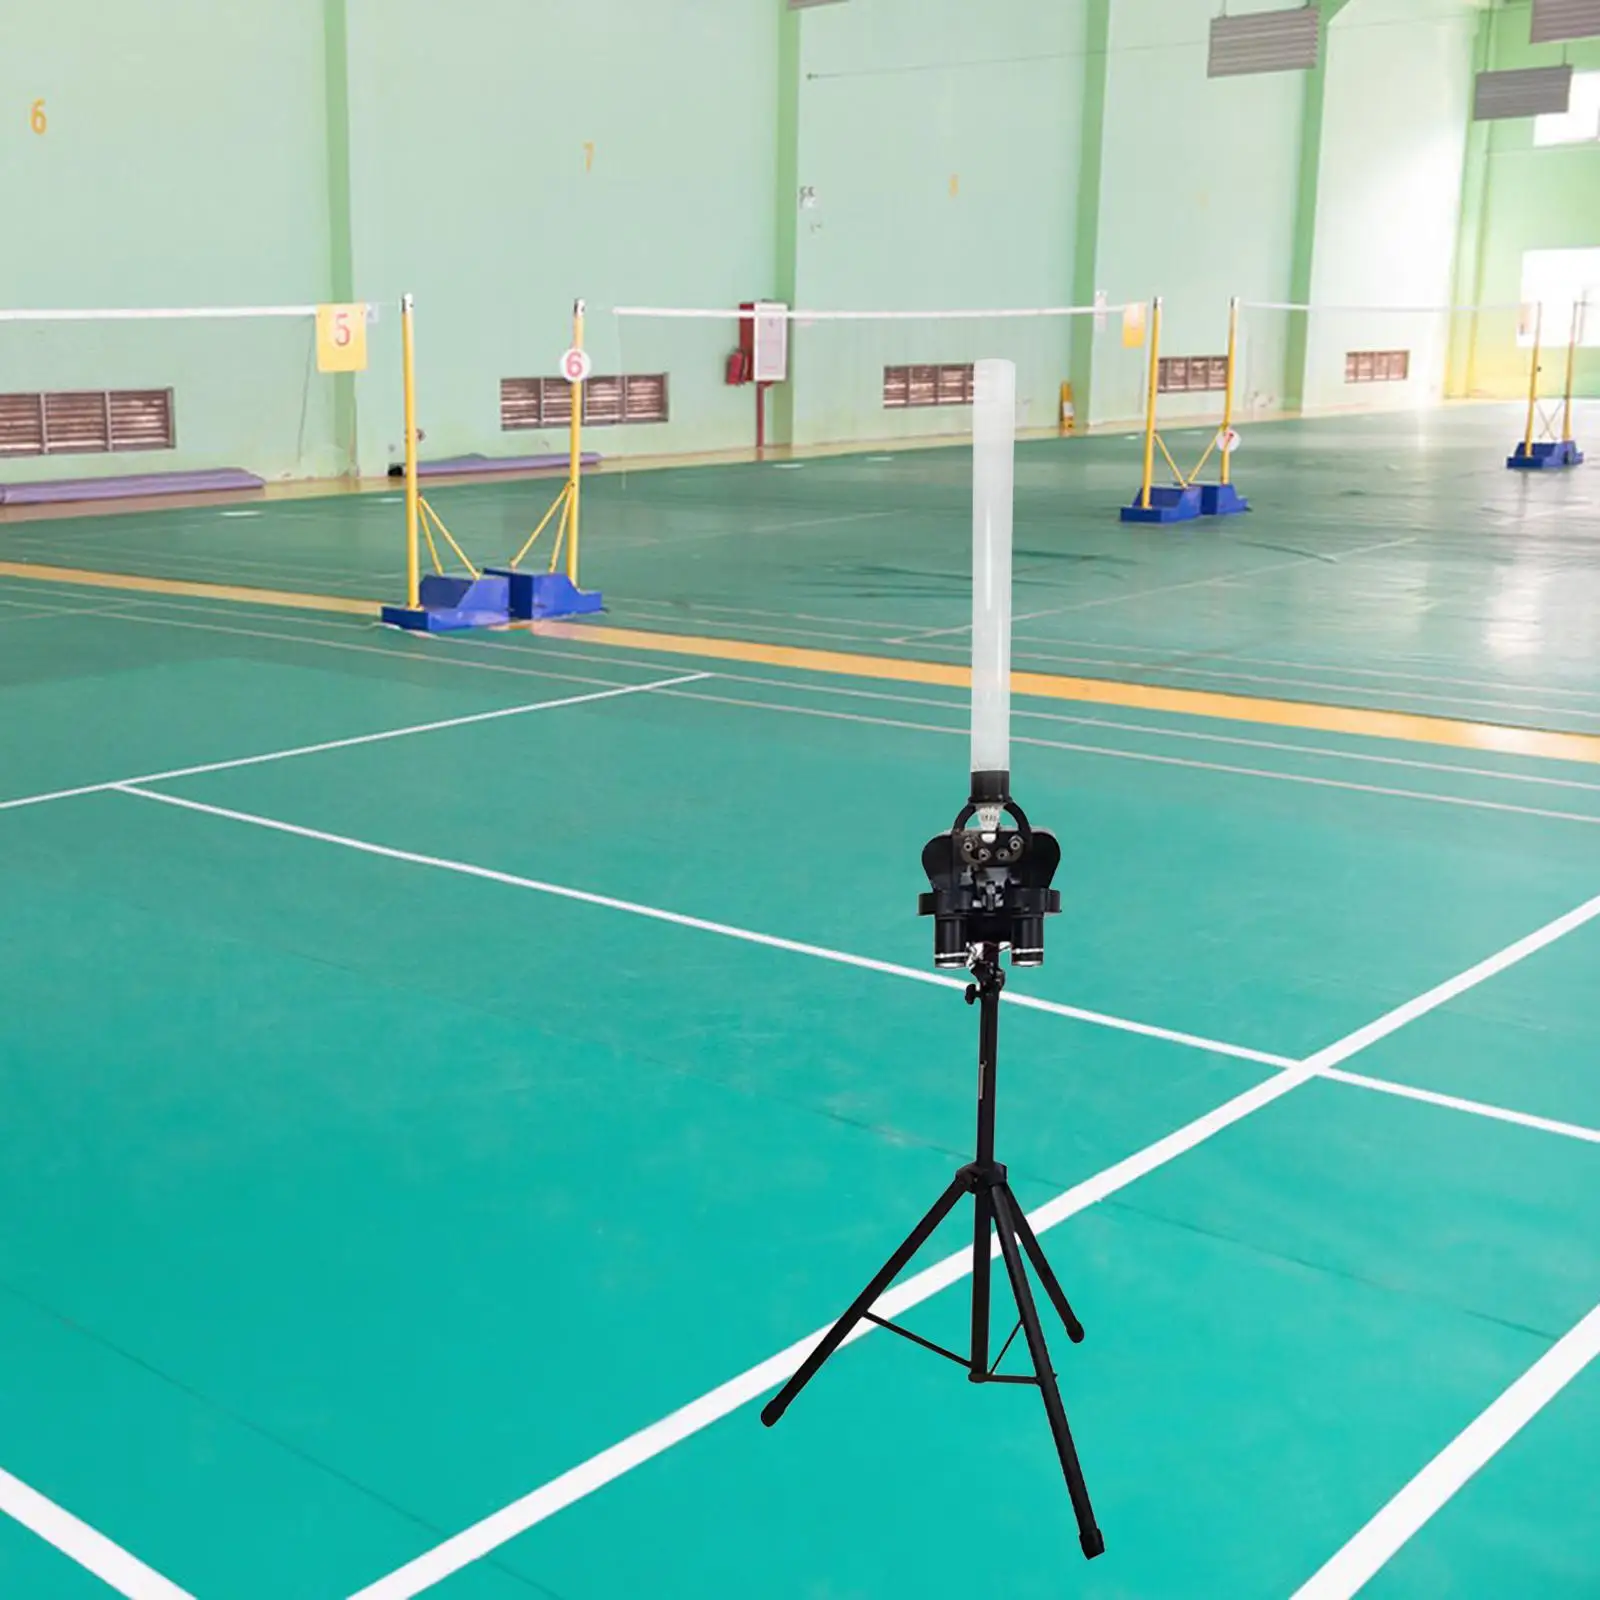 Automatic Badminton Serve Machine Badminton Launcher Practice Hold 200Pcs Ball